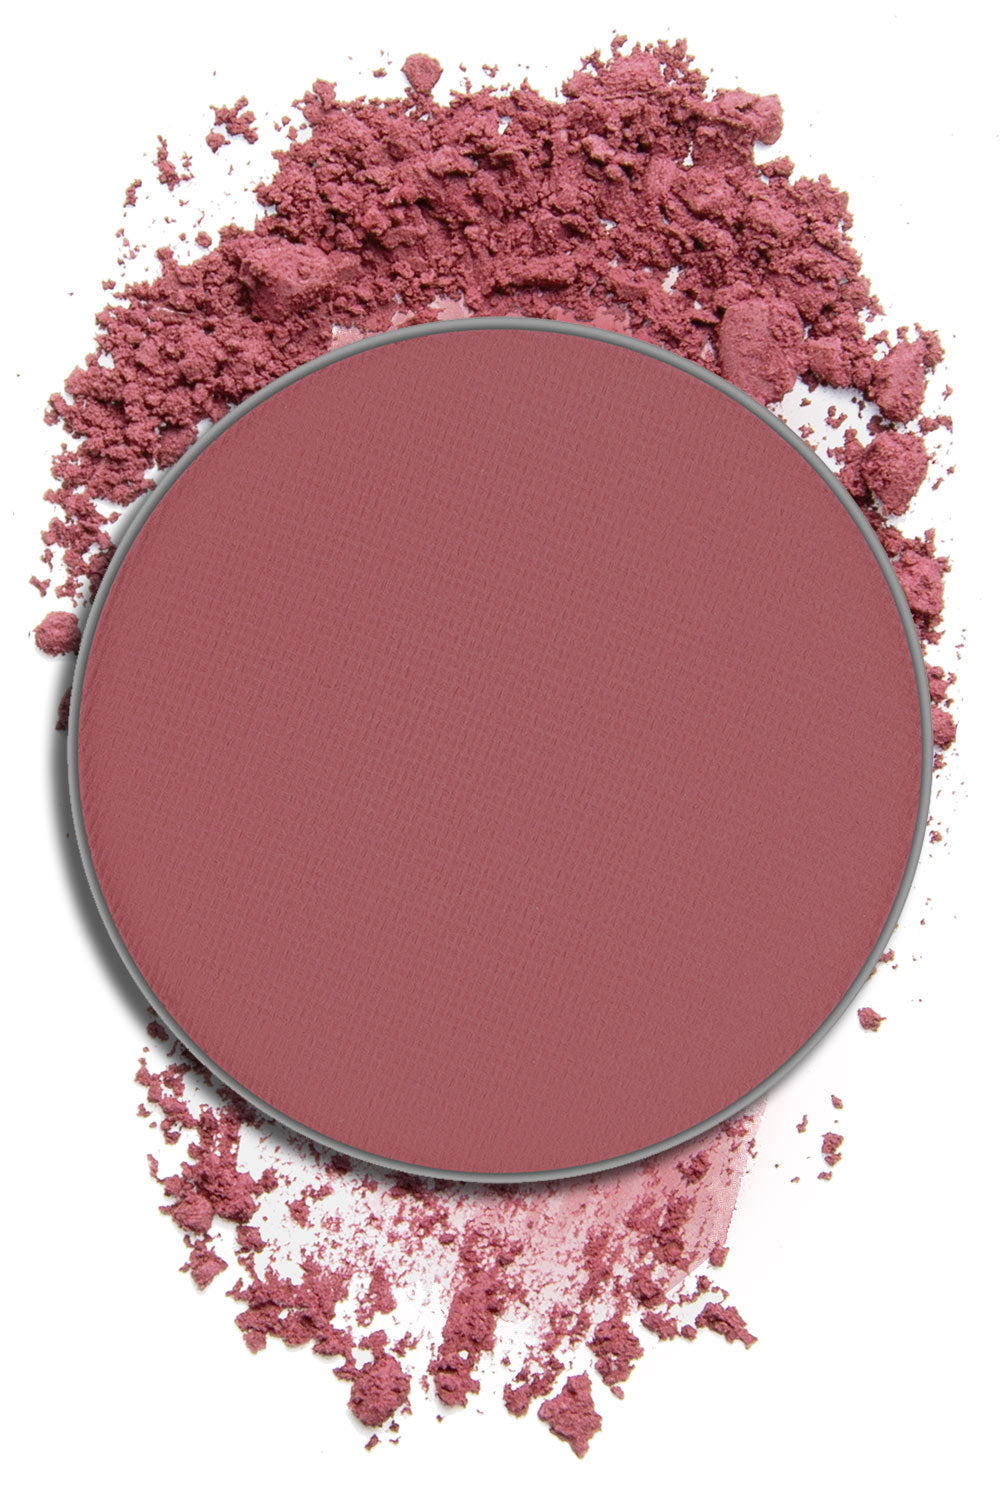 Pink Brown - Type 3 Blush Pan